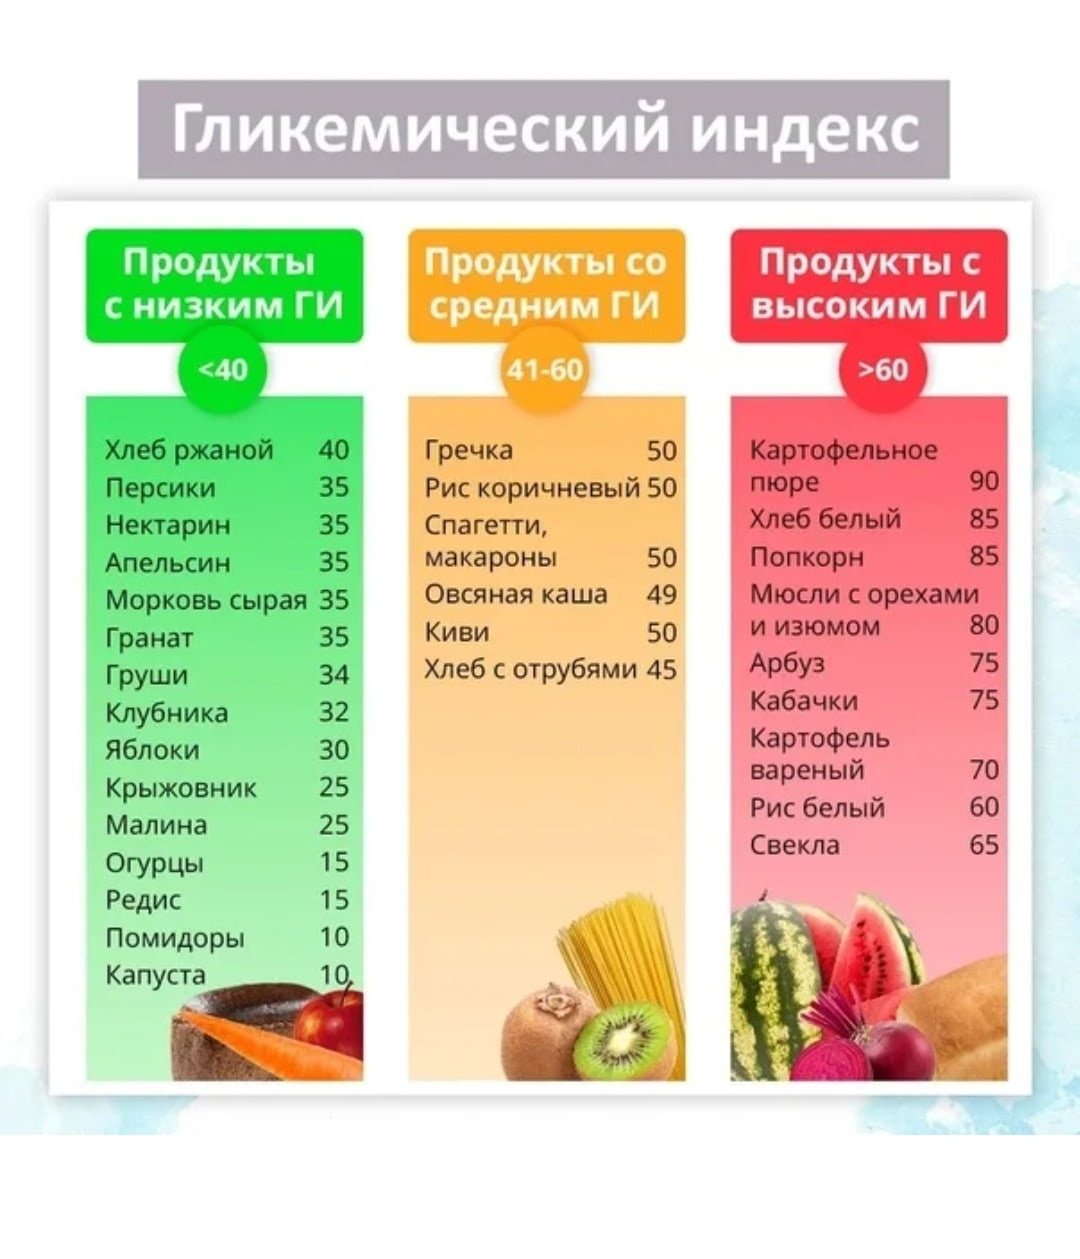 Сливочное масло гликемический индекс. Крупы гликемический индекс таблица. Таблица с высоким гликемическим индексом продуктов питания. Фрукты и овощи с низким гликемическим индексом список. Таблица продуктов с гликемическим индексом диета.